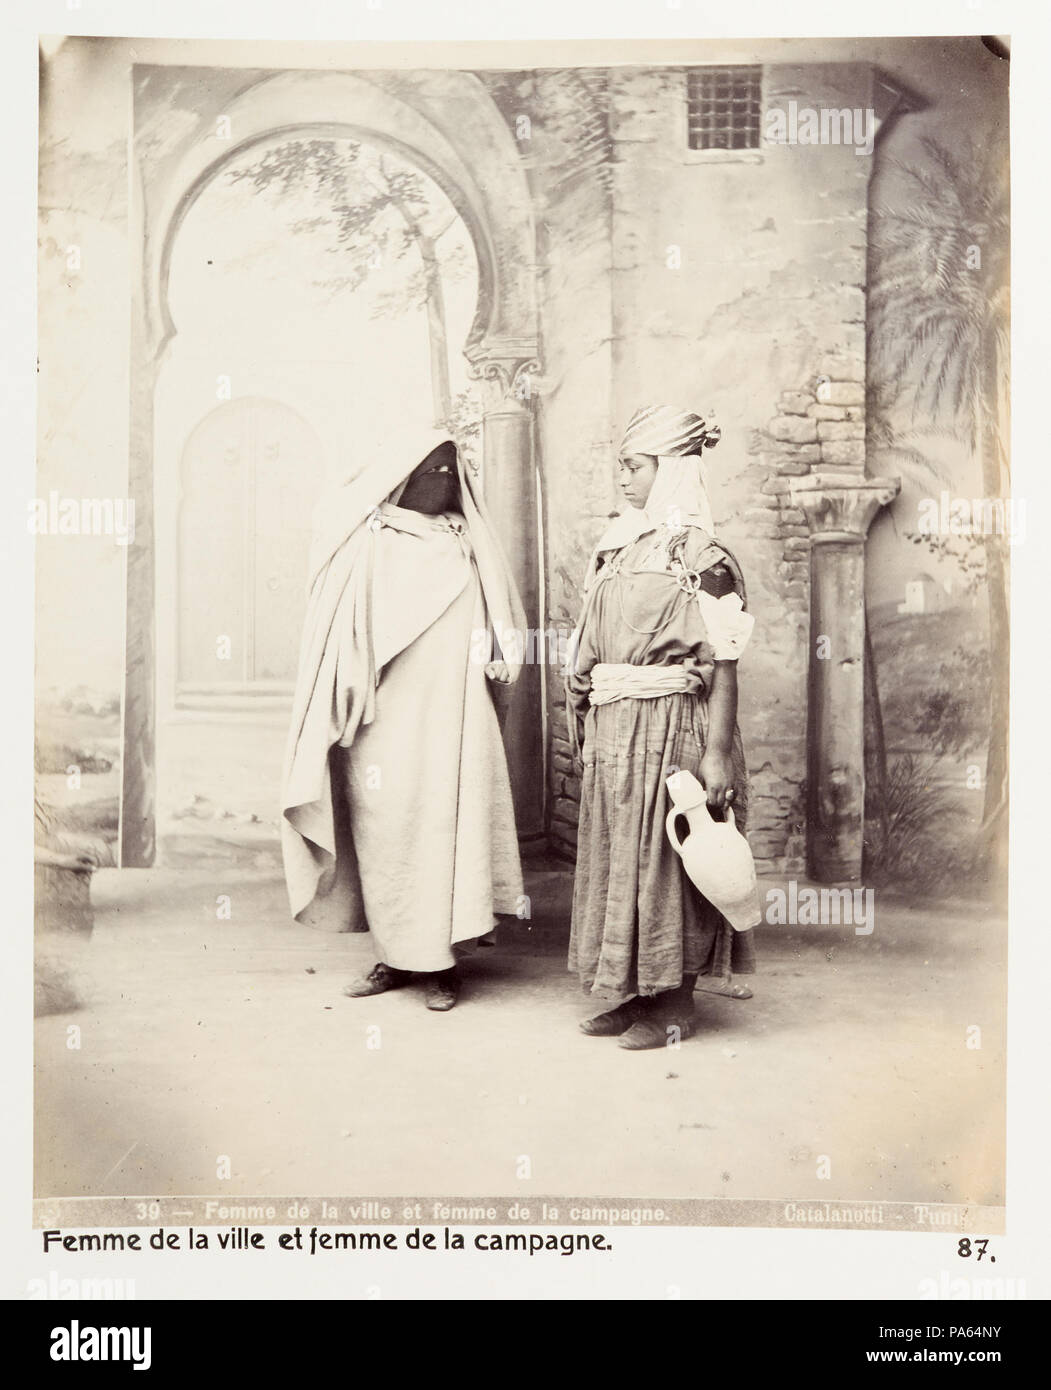 Inv.nr: LXVI:K.H.87. 150 Kvinna från staden och kvinna från landet, Tunisien, 1800-tal - Hallwylska museet - 107954 Stock Photo